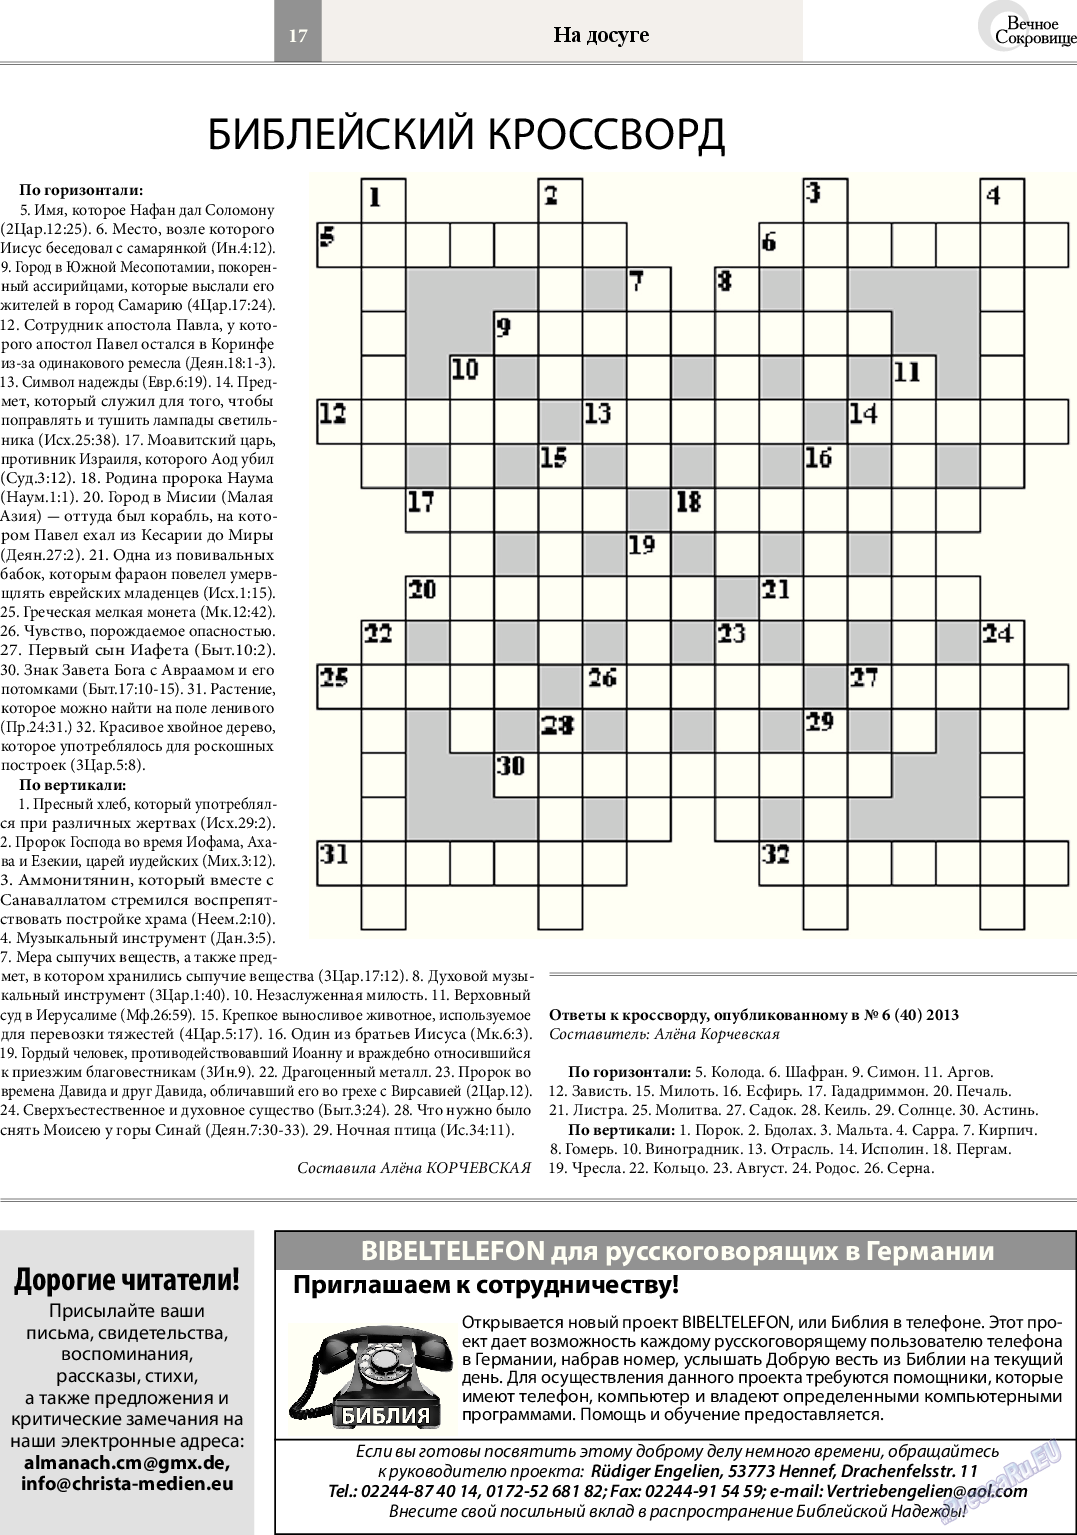 Вечное сокровище, газета. 2014 №2 стр.17